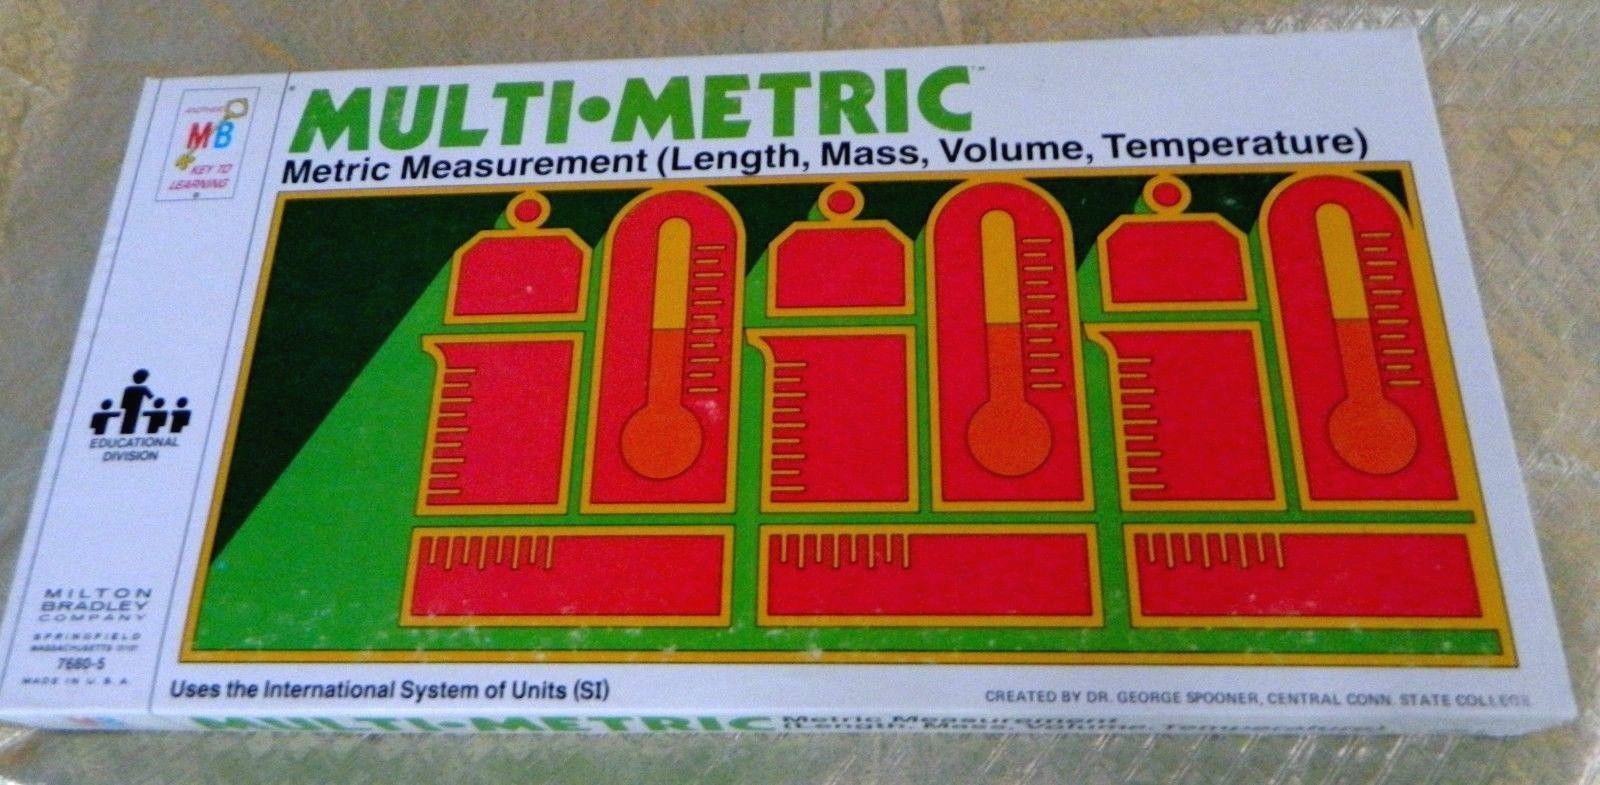 Multi-Metric